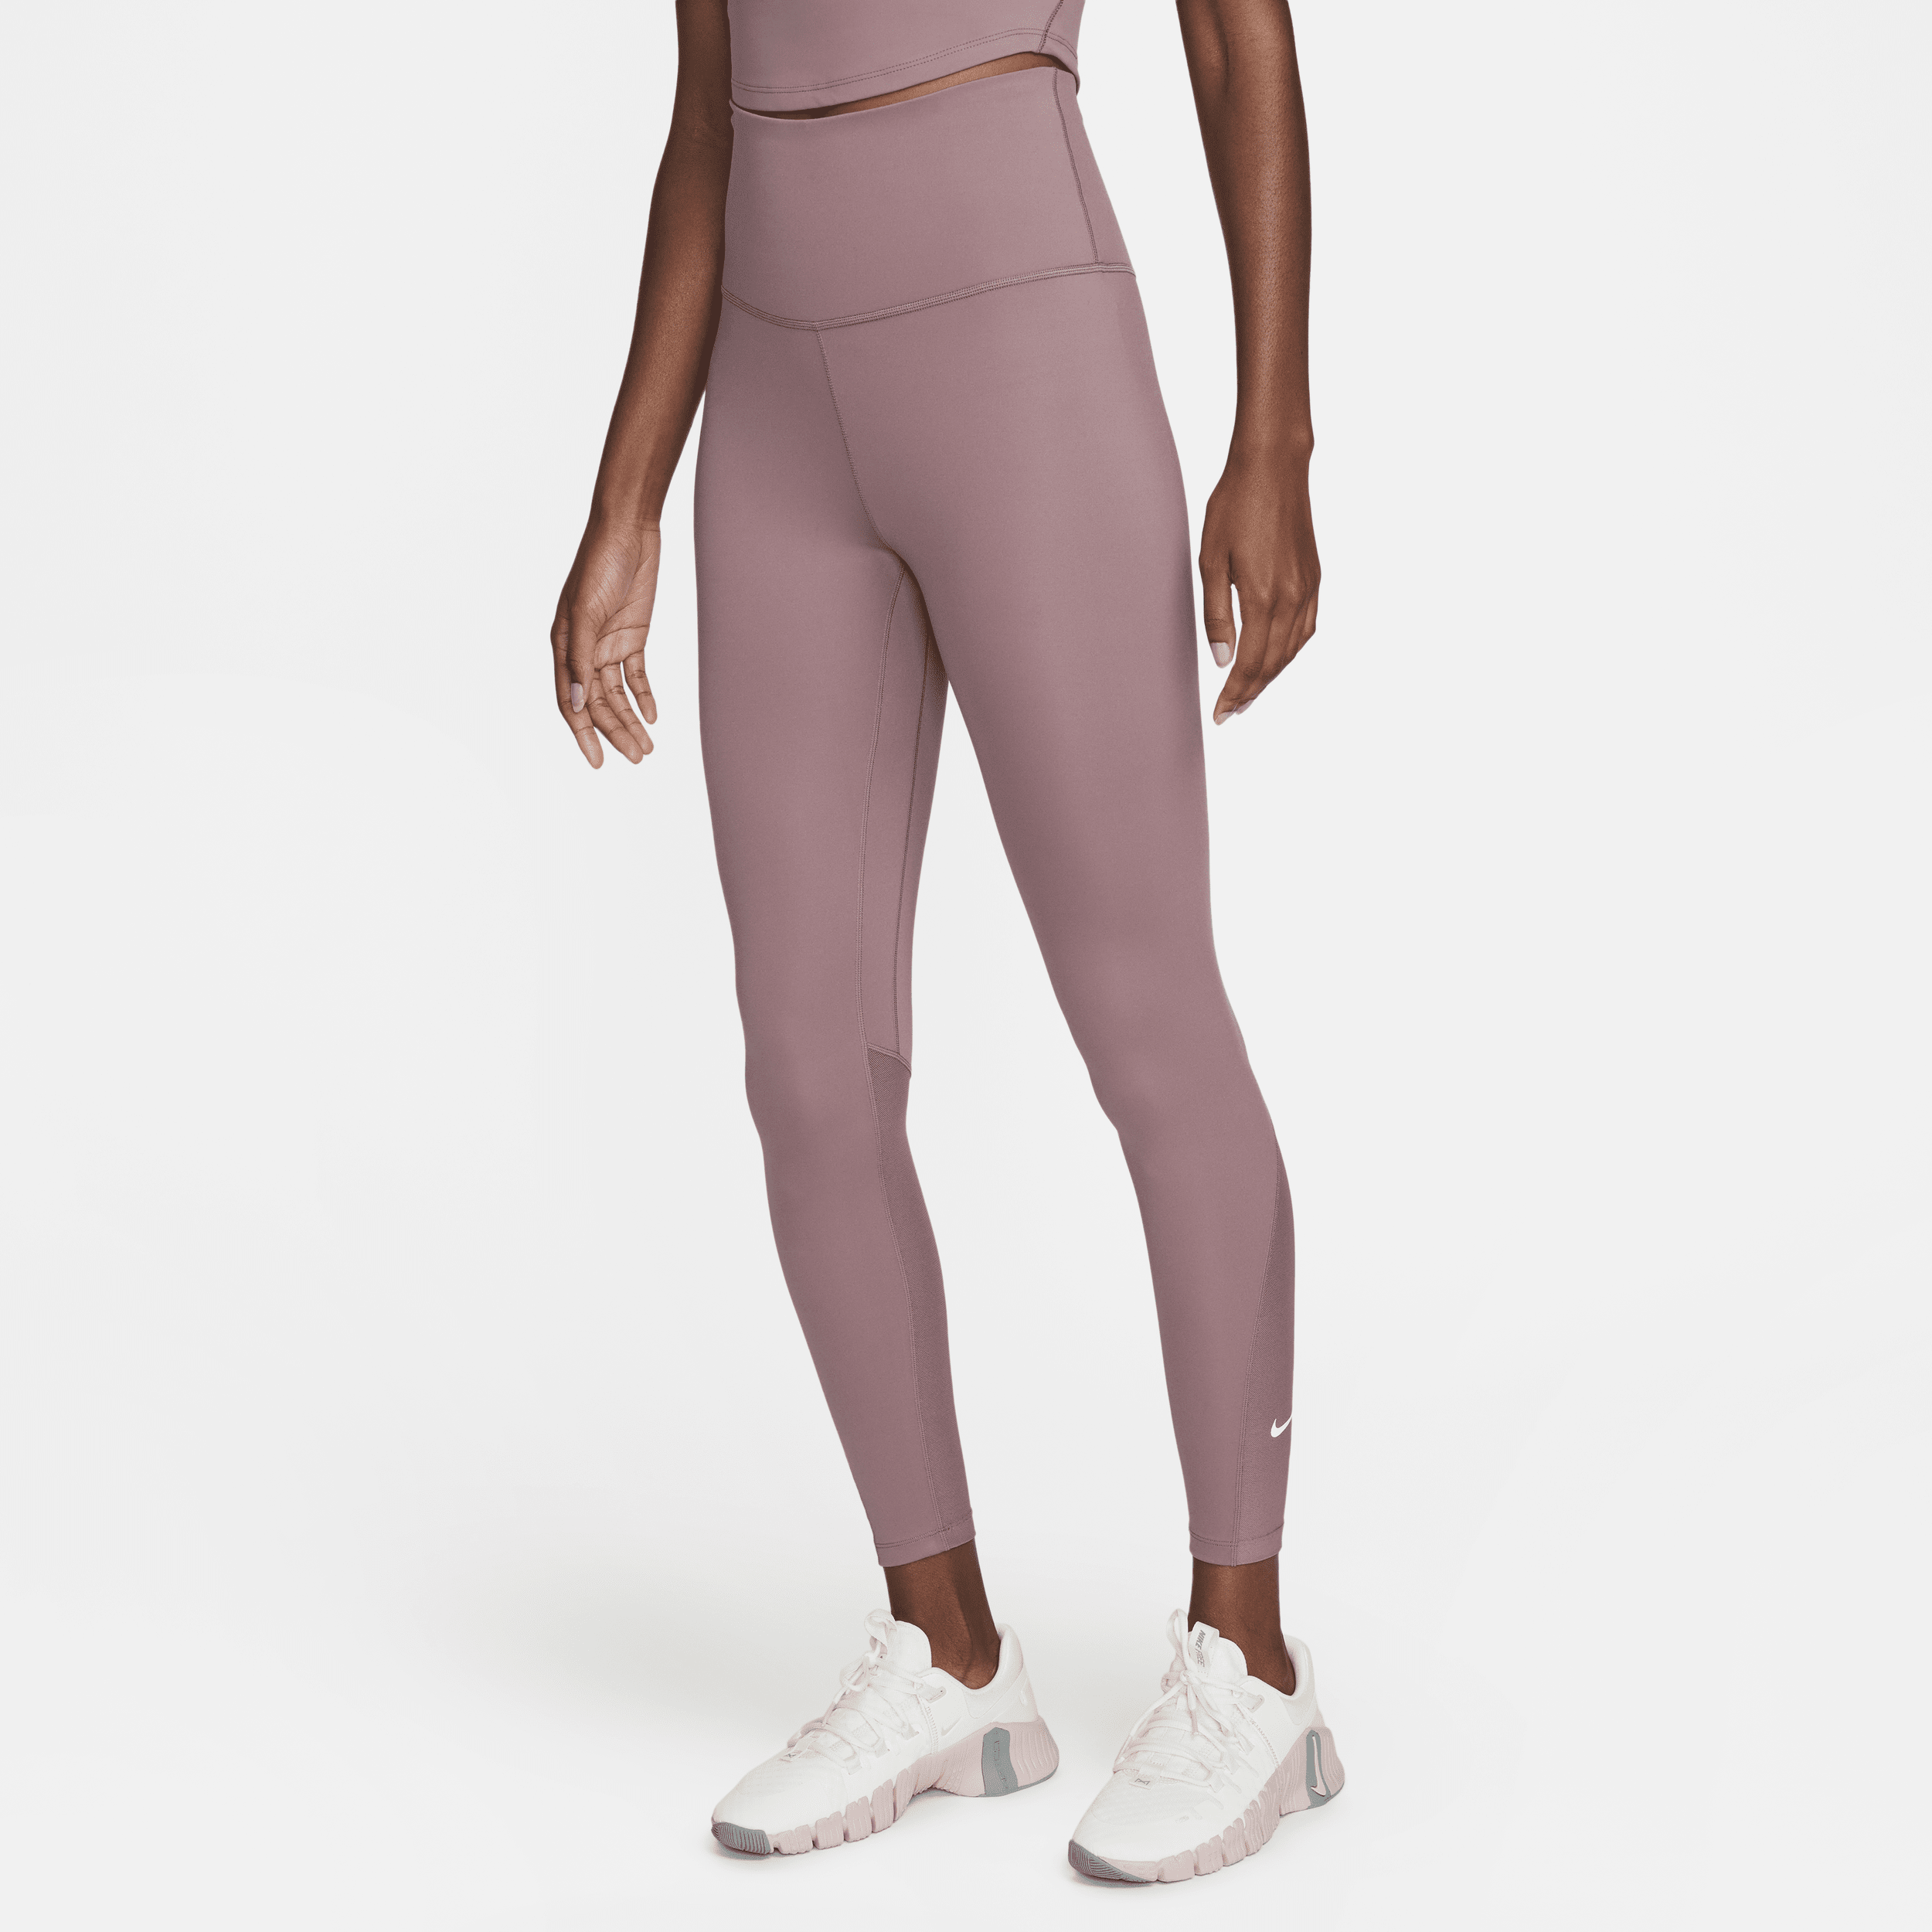 Nike One 7/8-legging met hoge taille voor dames - Paars